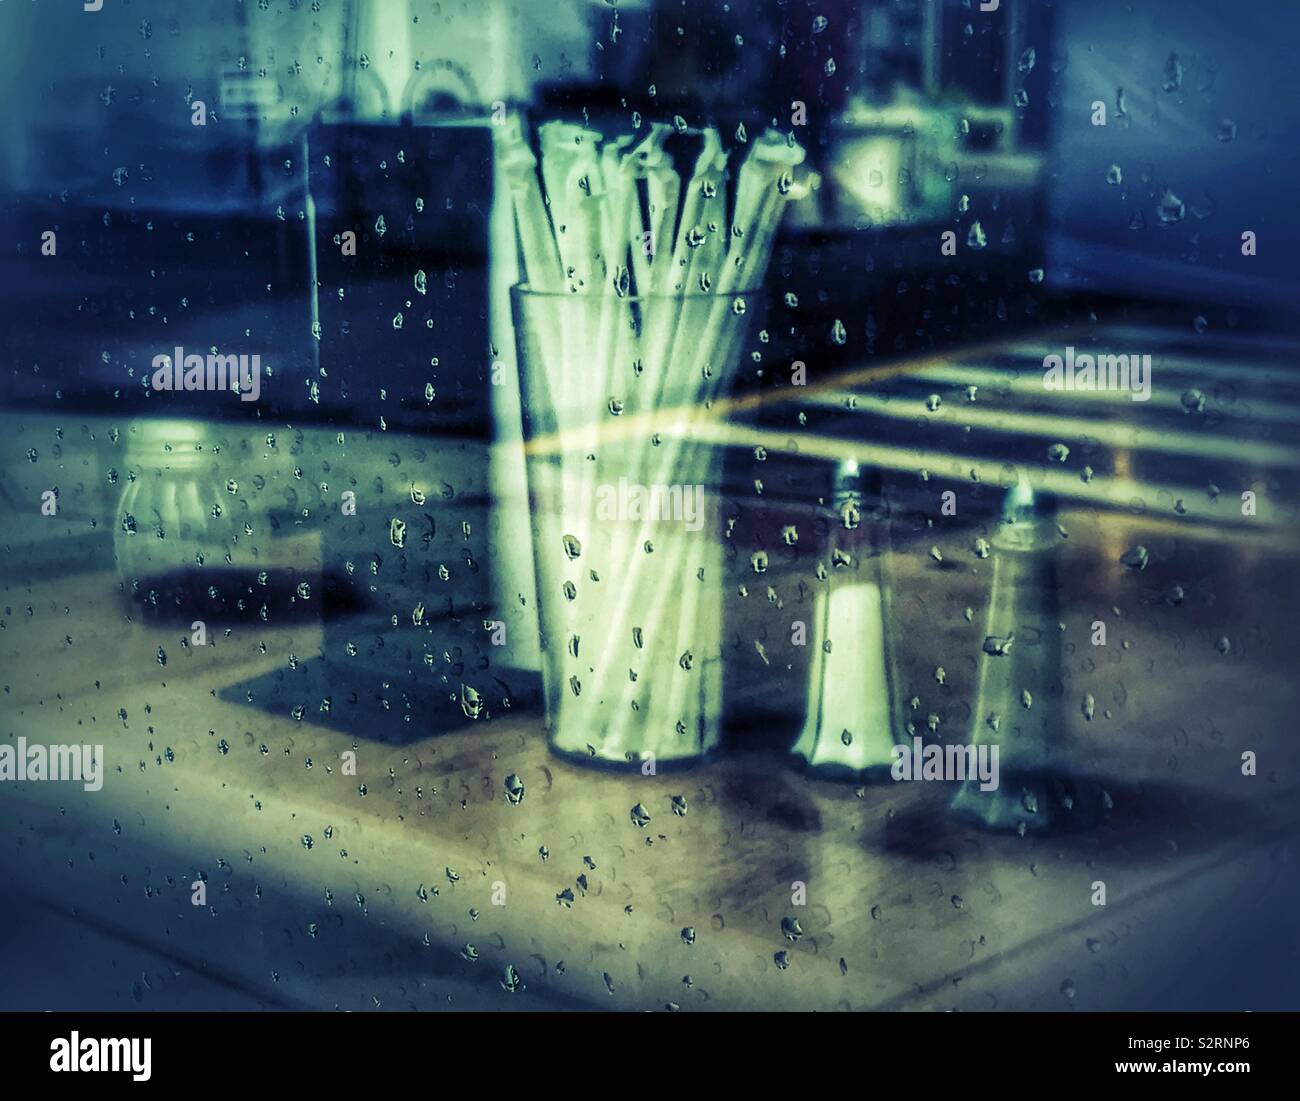 https://c8.alamy.com/comp/S2RNP6/restaurant-window-with-raindrops-S2RNP6.jpg